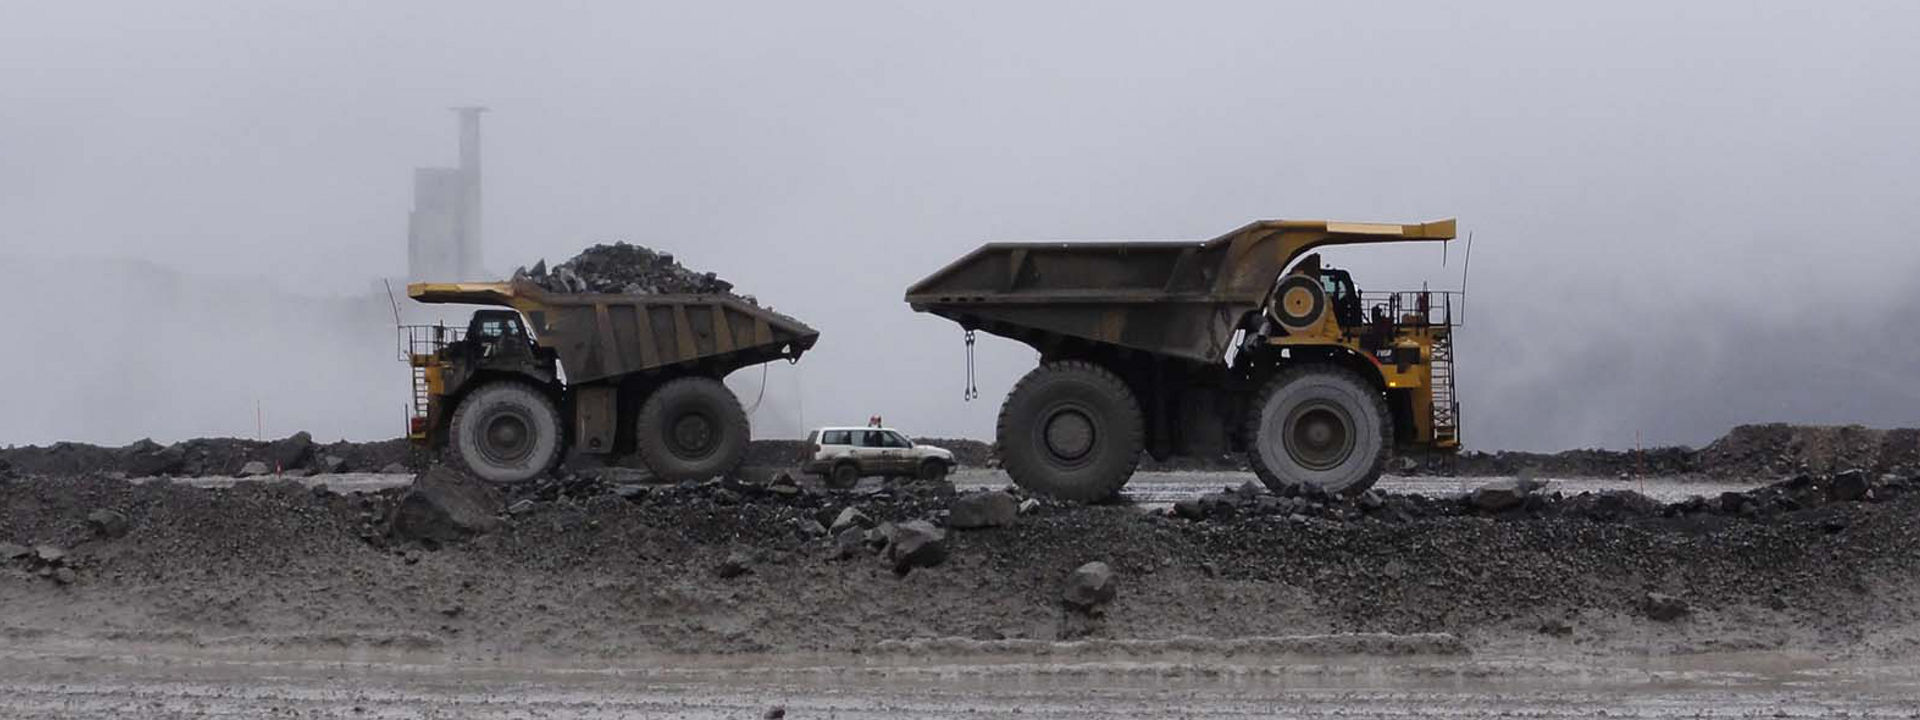 Quatre véhicules tout-terrain équipés de pneus Bridgestone travaillant dans une mine à ciel ouvert.